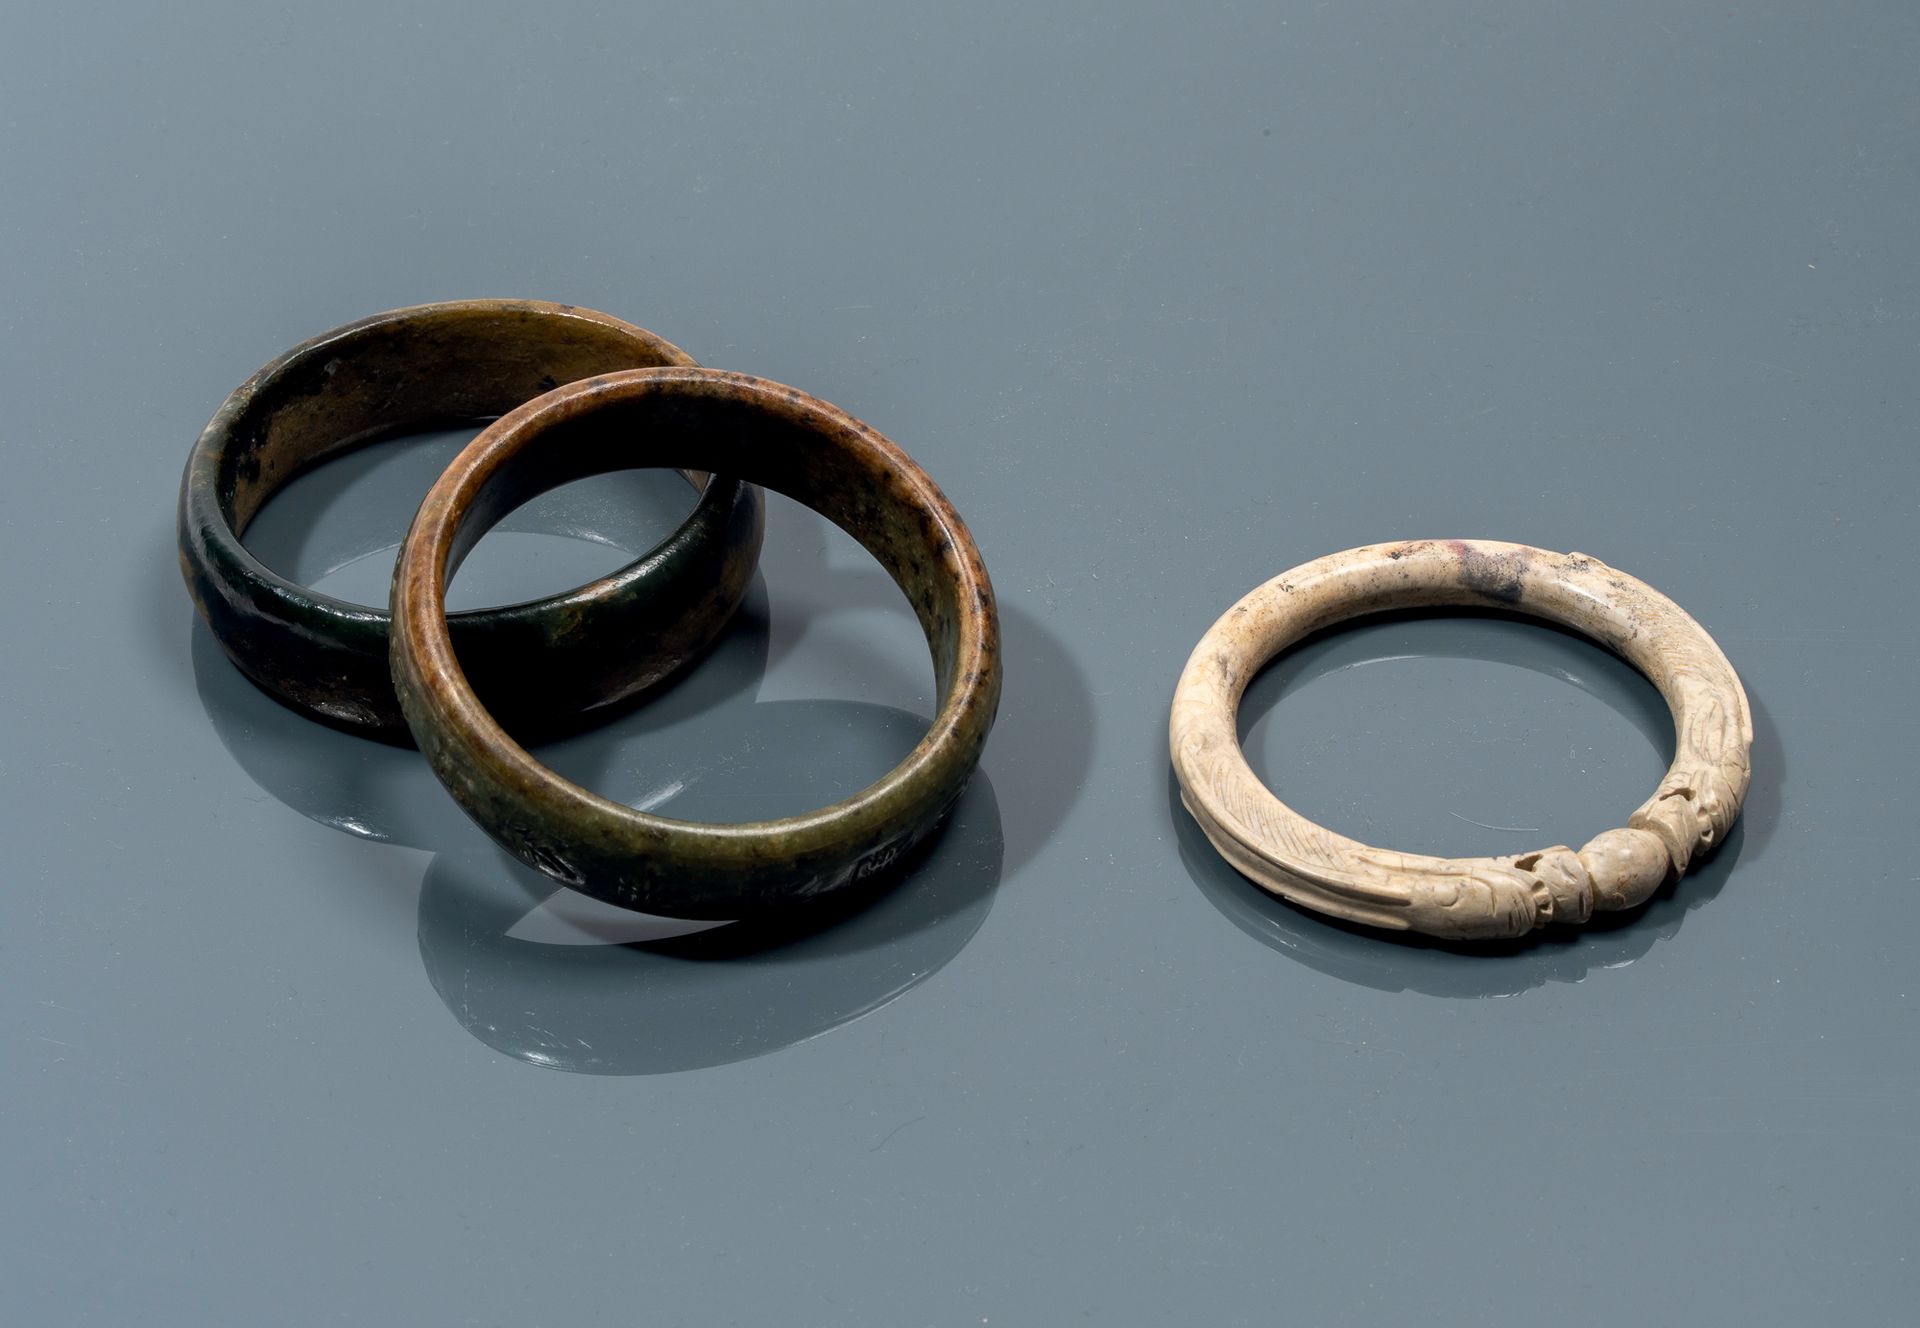 CHINE - Epoque MING (1368 - 1644) 
Tres brazaletes de nefrita, uno de hueso de p&hellip;